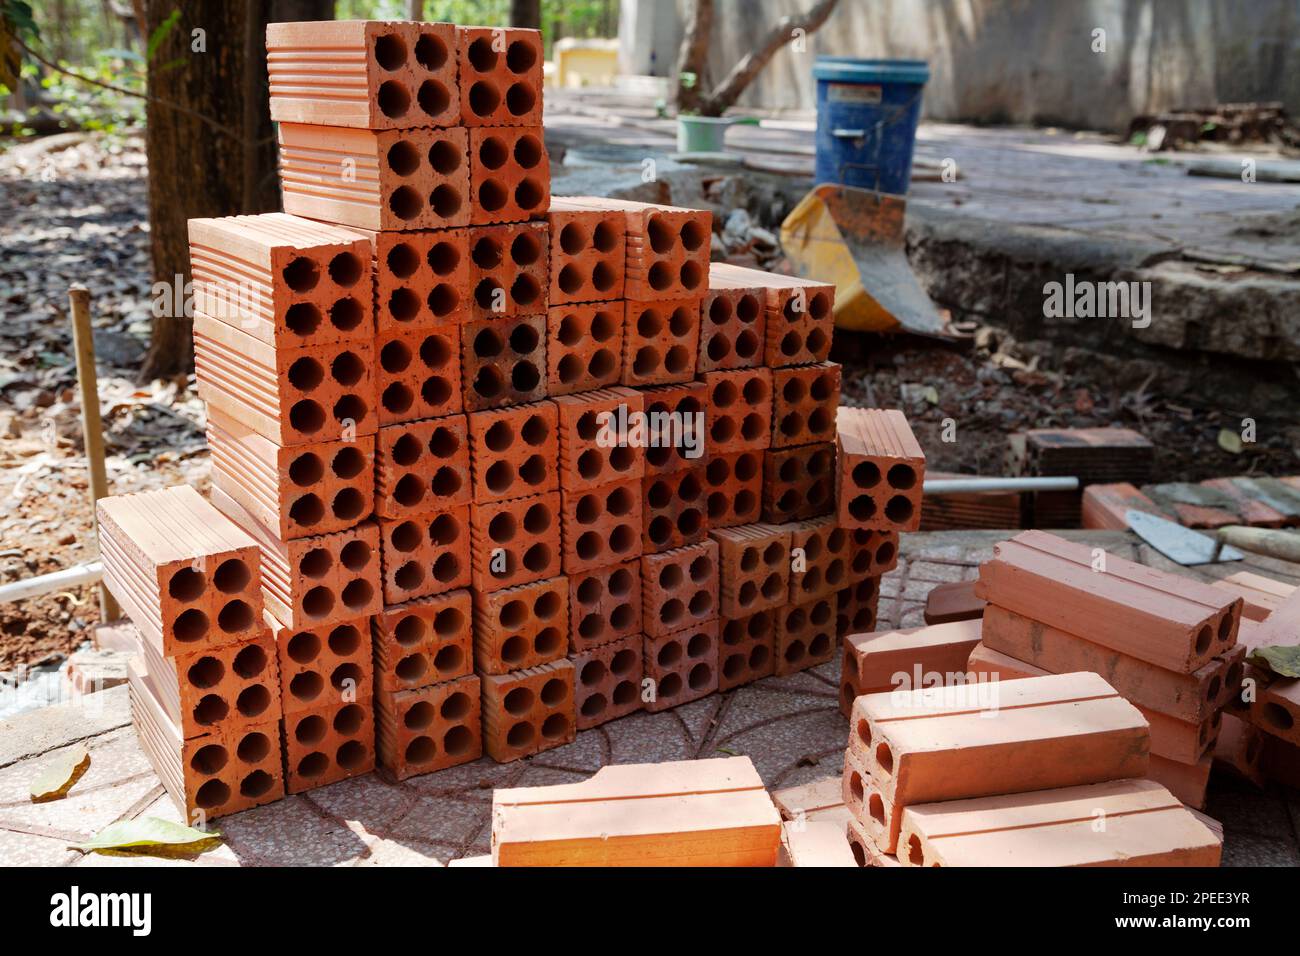 Pila di mattoni cavi arancioni con attrezzi di posa di mattoni in un cantiere. Palo di mattoni di creta bruciati nuovi preparato per lavoro di muratura Foto Stock